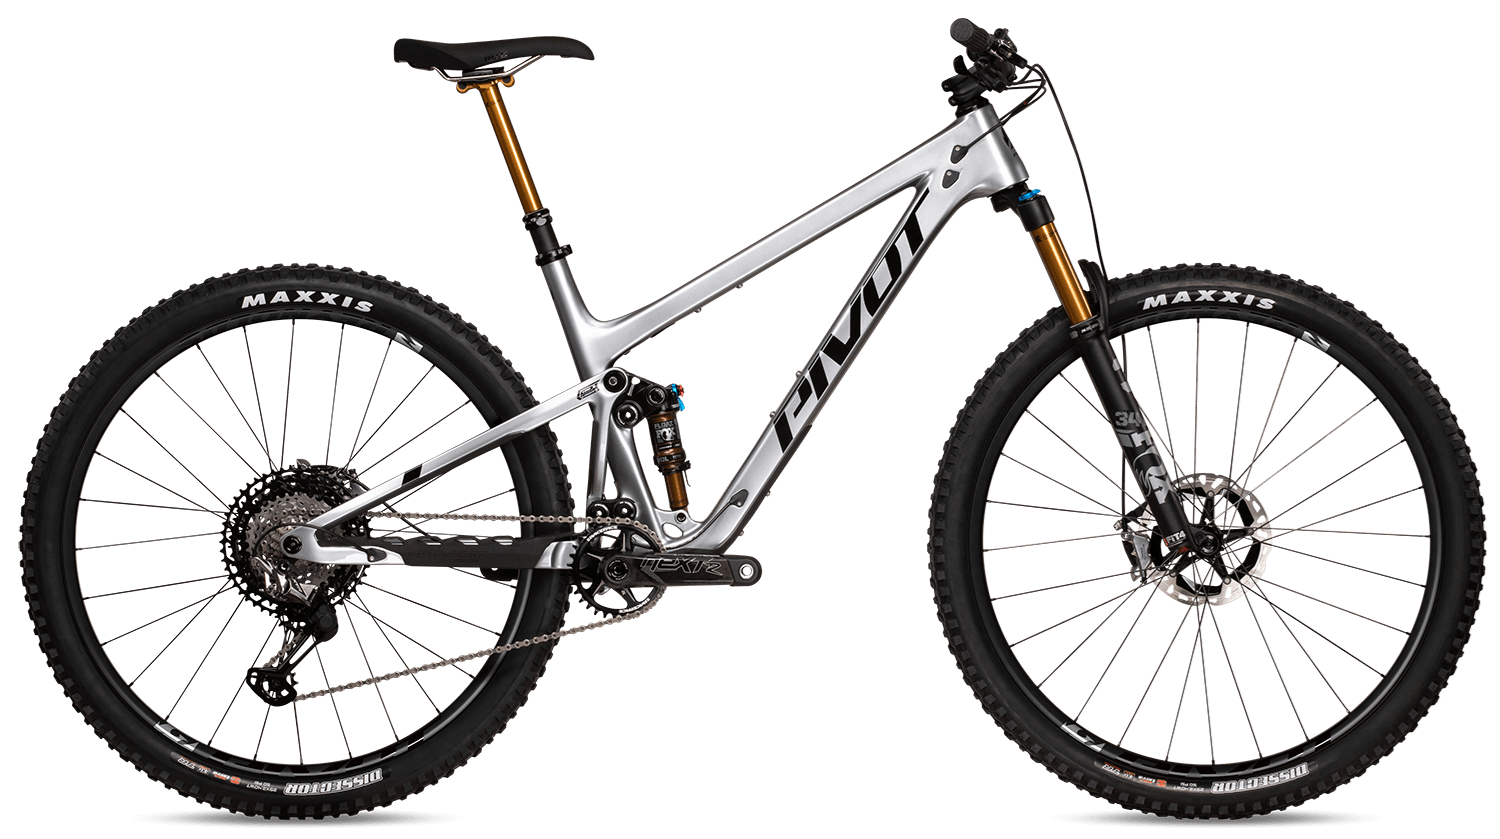 pivot-mountain-bike-trail-429-pro-xt-xtr-enduro-29-silver-metallic